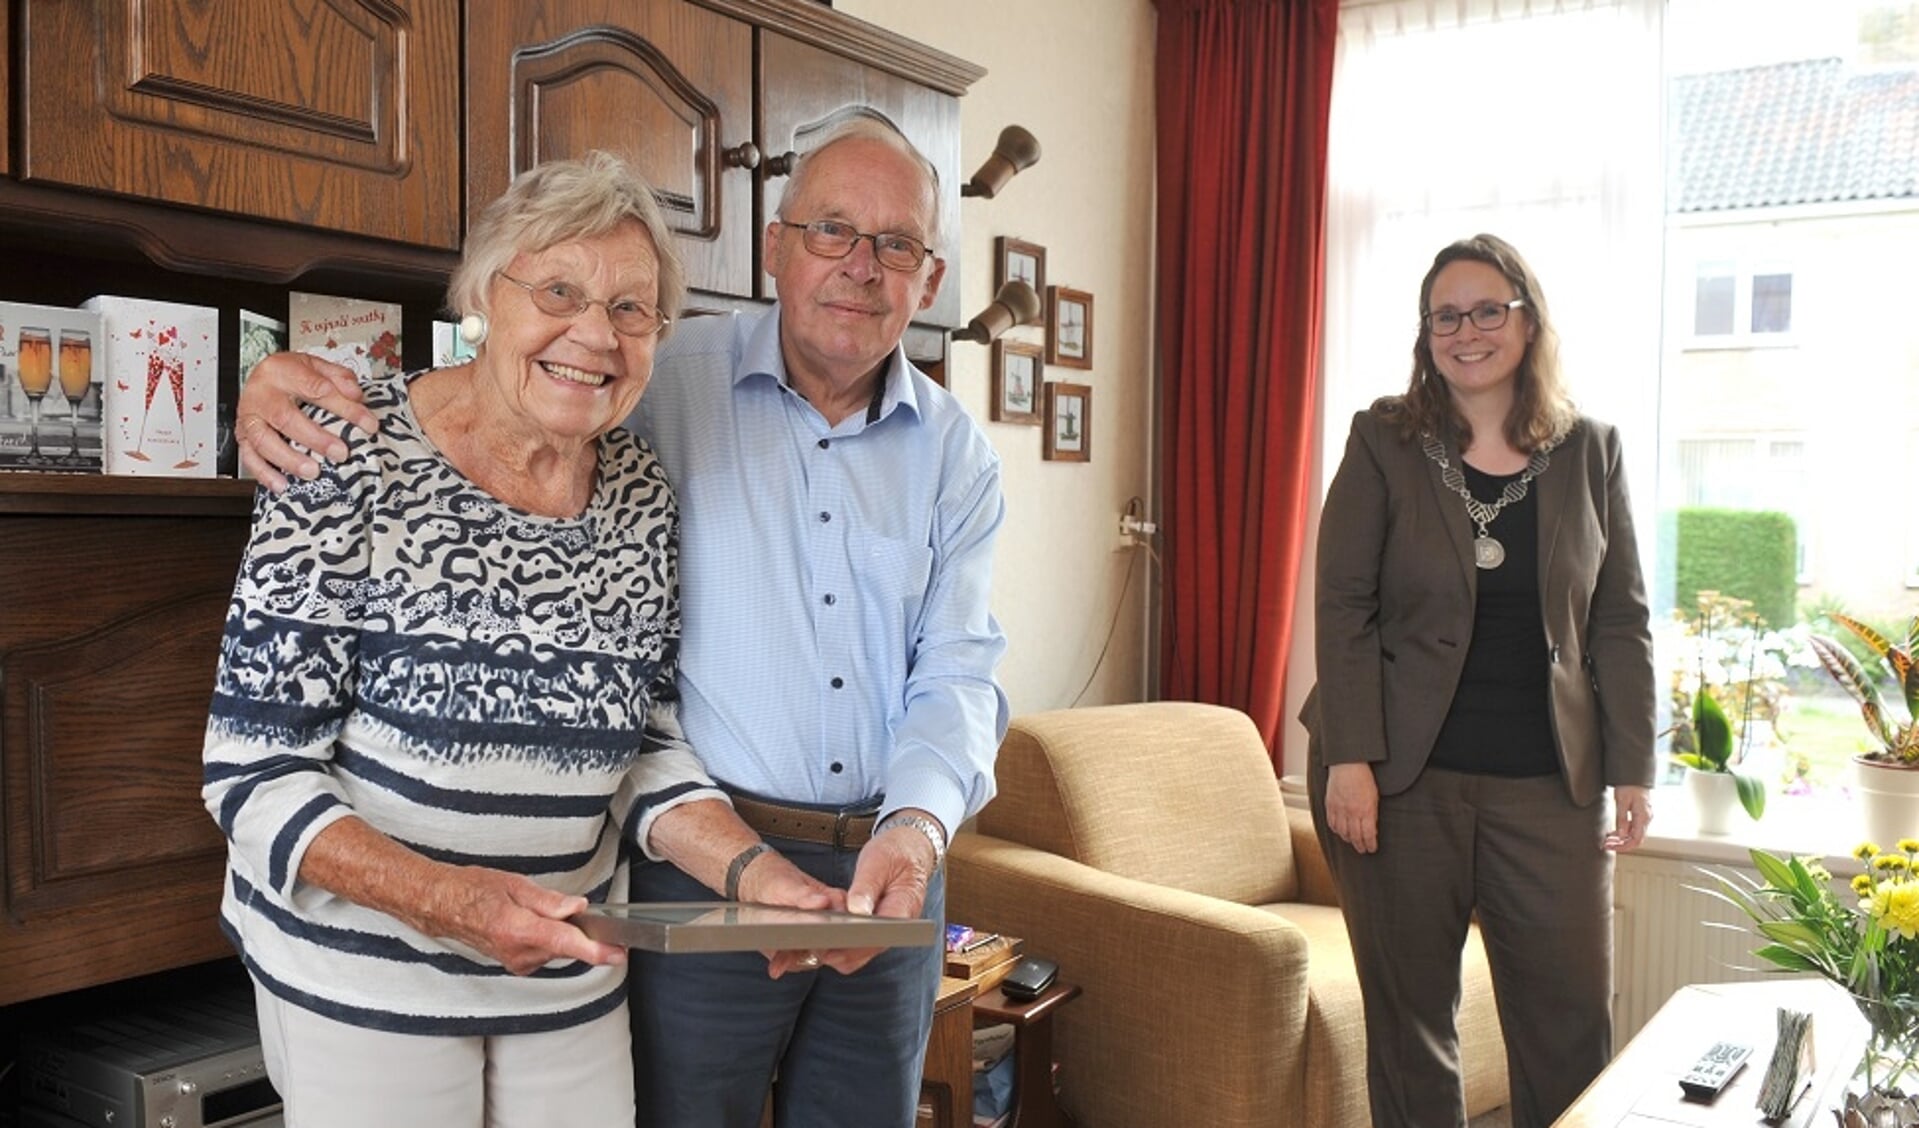 Burgemeester Judith Michel feliciteert echtpaar Halma-Jansen met 60 jarig huwelijk.